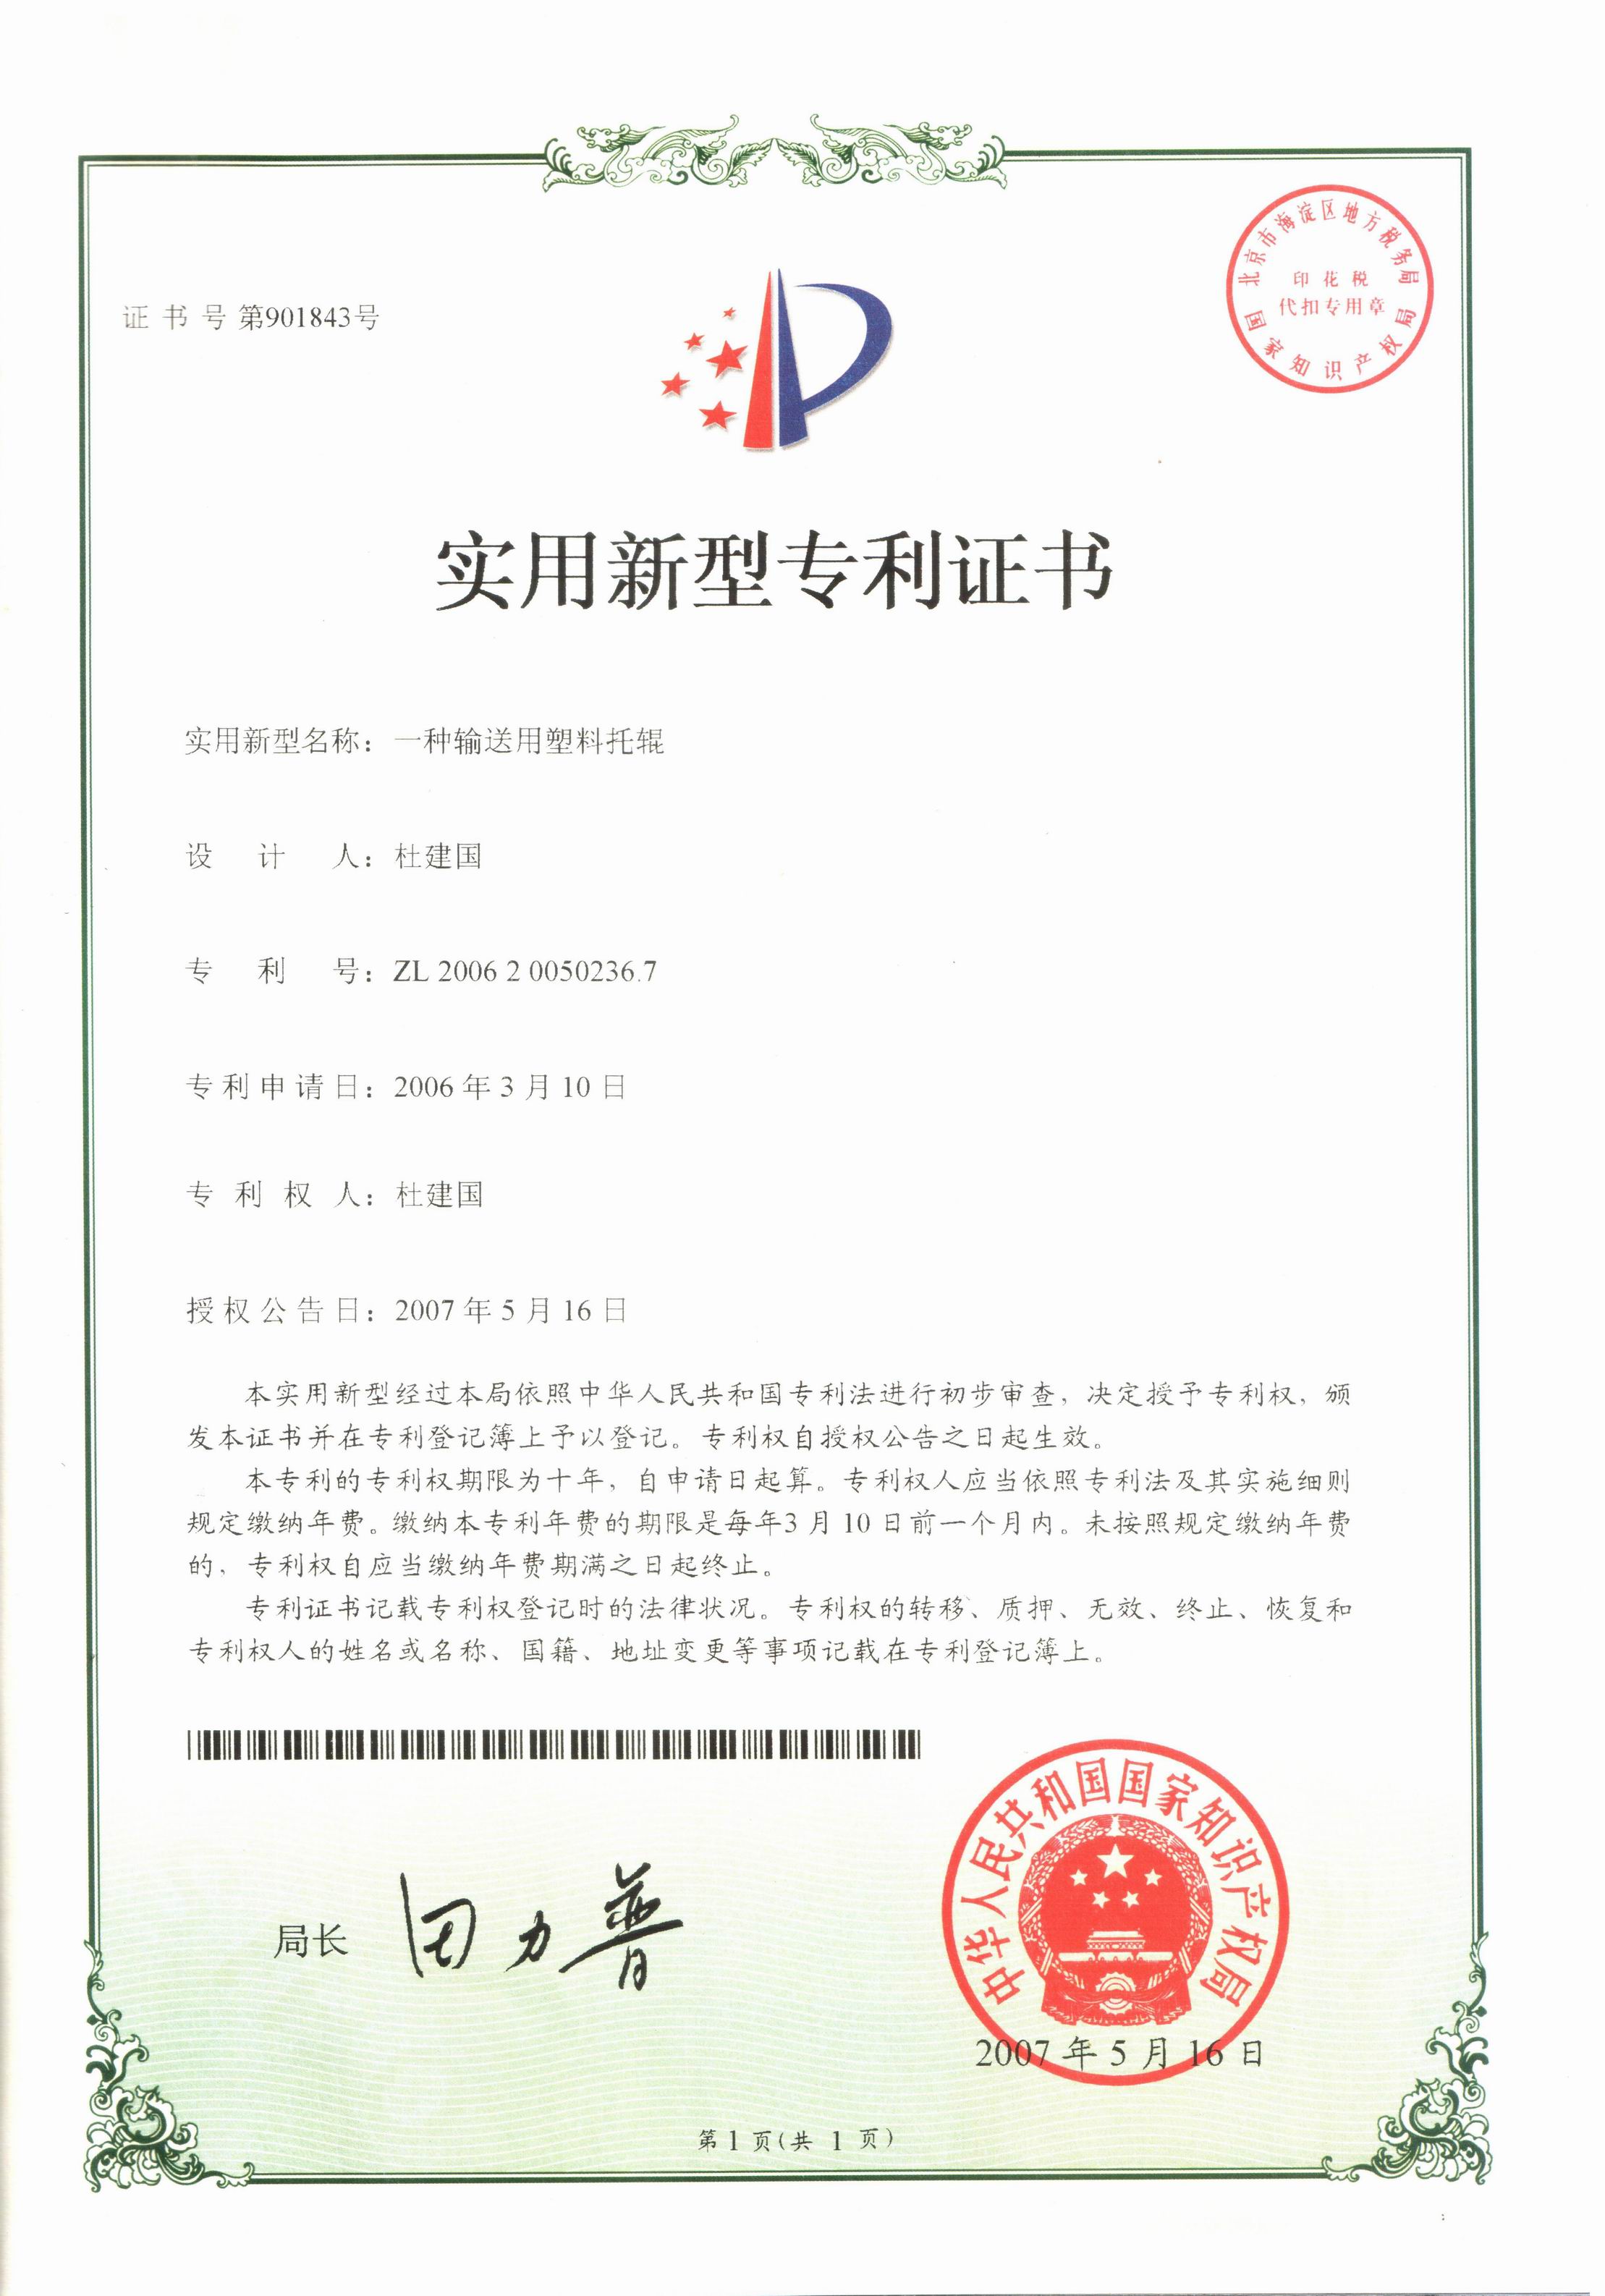 株洲杜能公司超高聚乙烯托辊获得的荣誉和专利证书